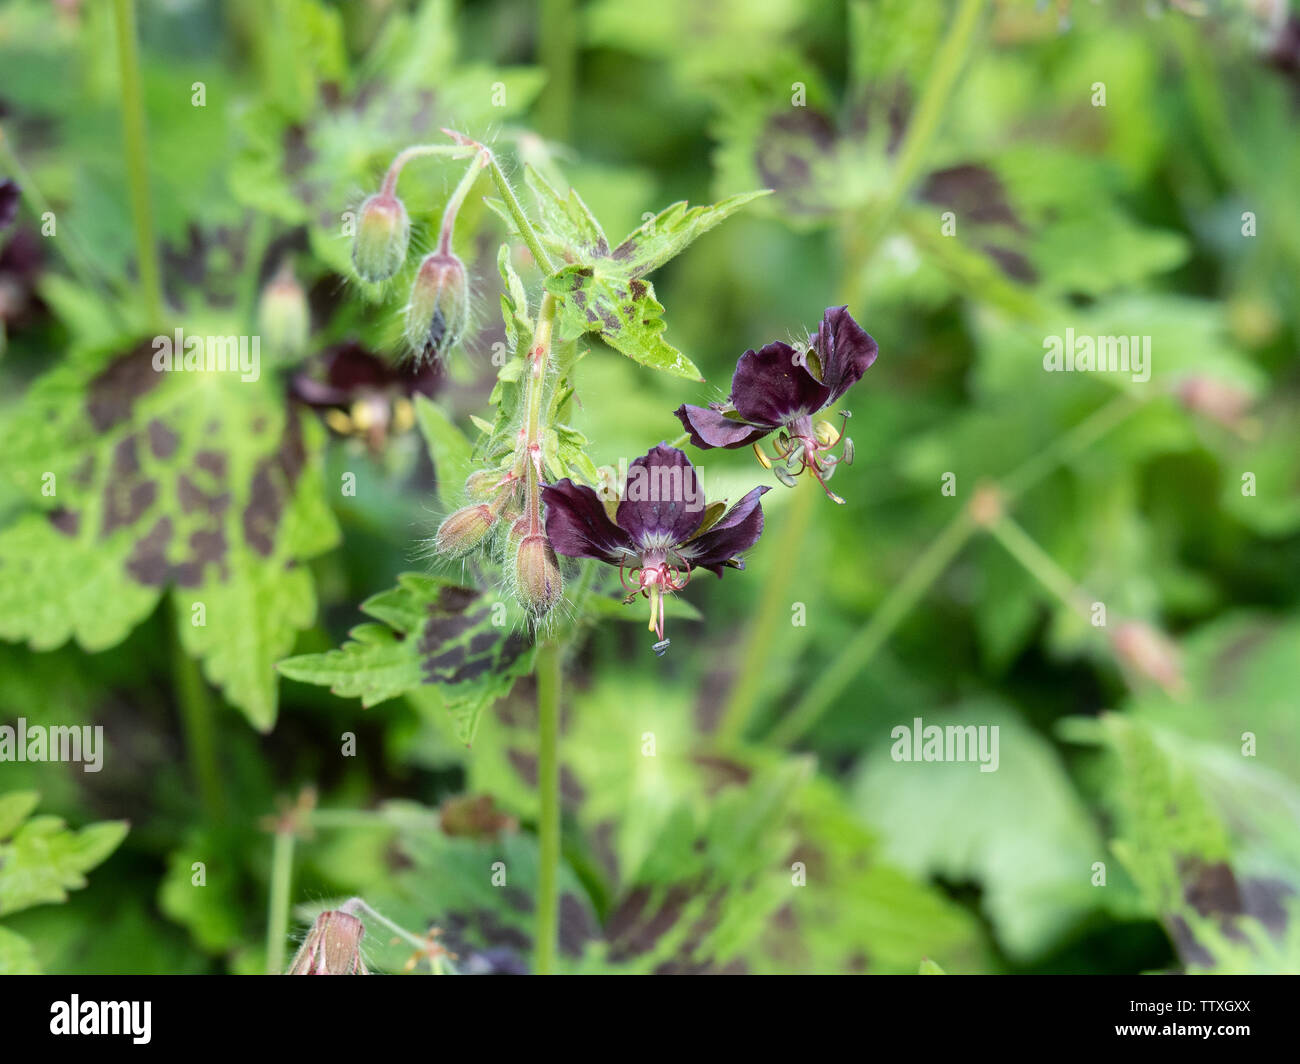 A close up of the chocolate coloured flowers of Geranium phaeum Samobor Stock Photo